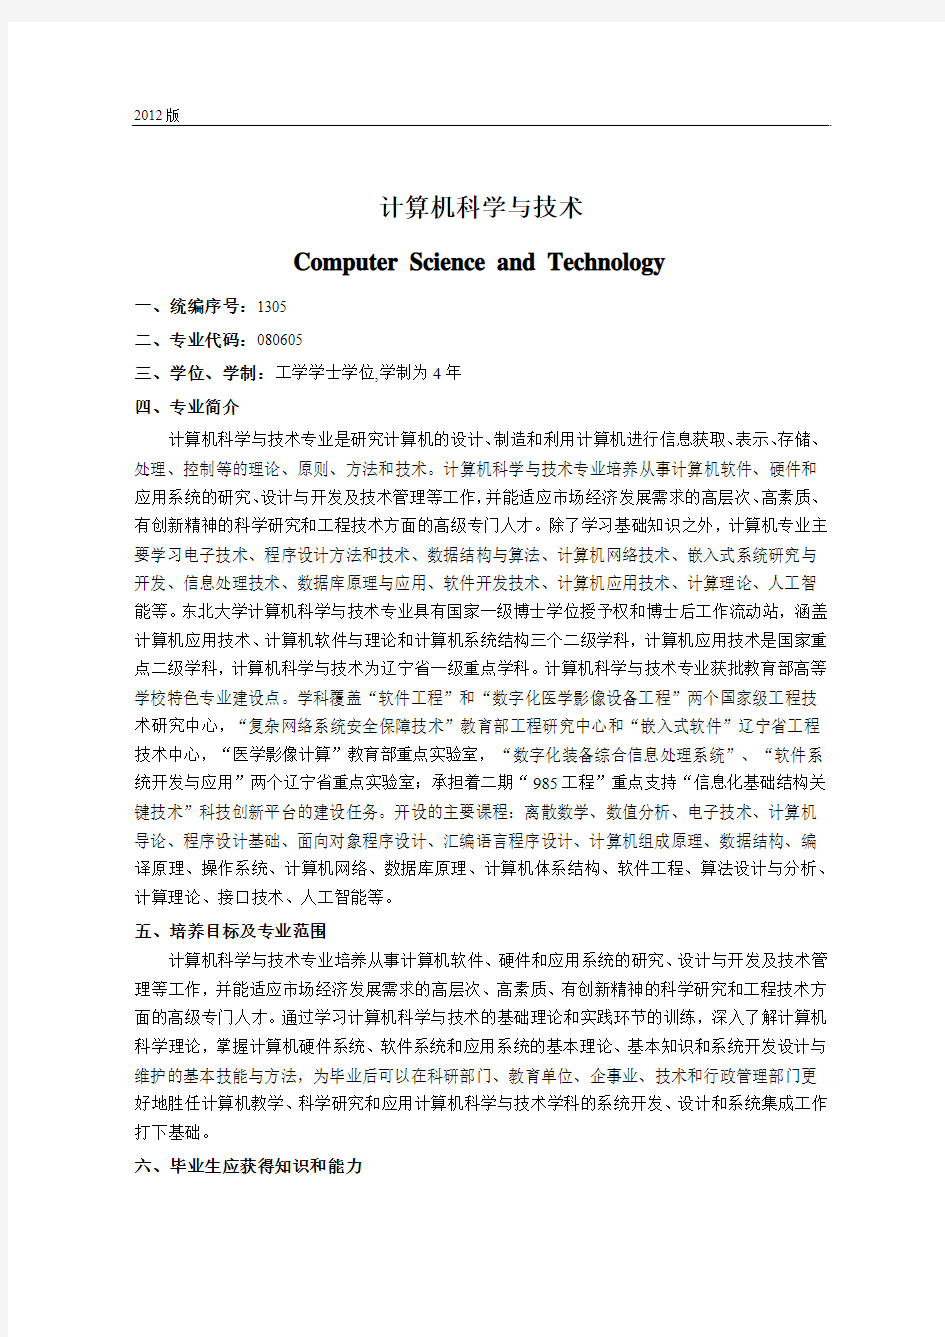 东北大学2012版-080605-计算机科学与技术培养计划